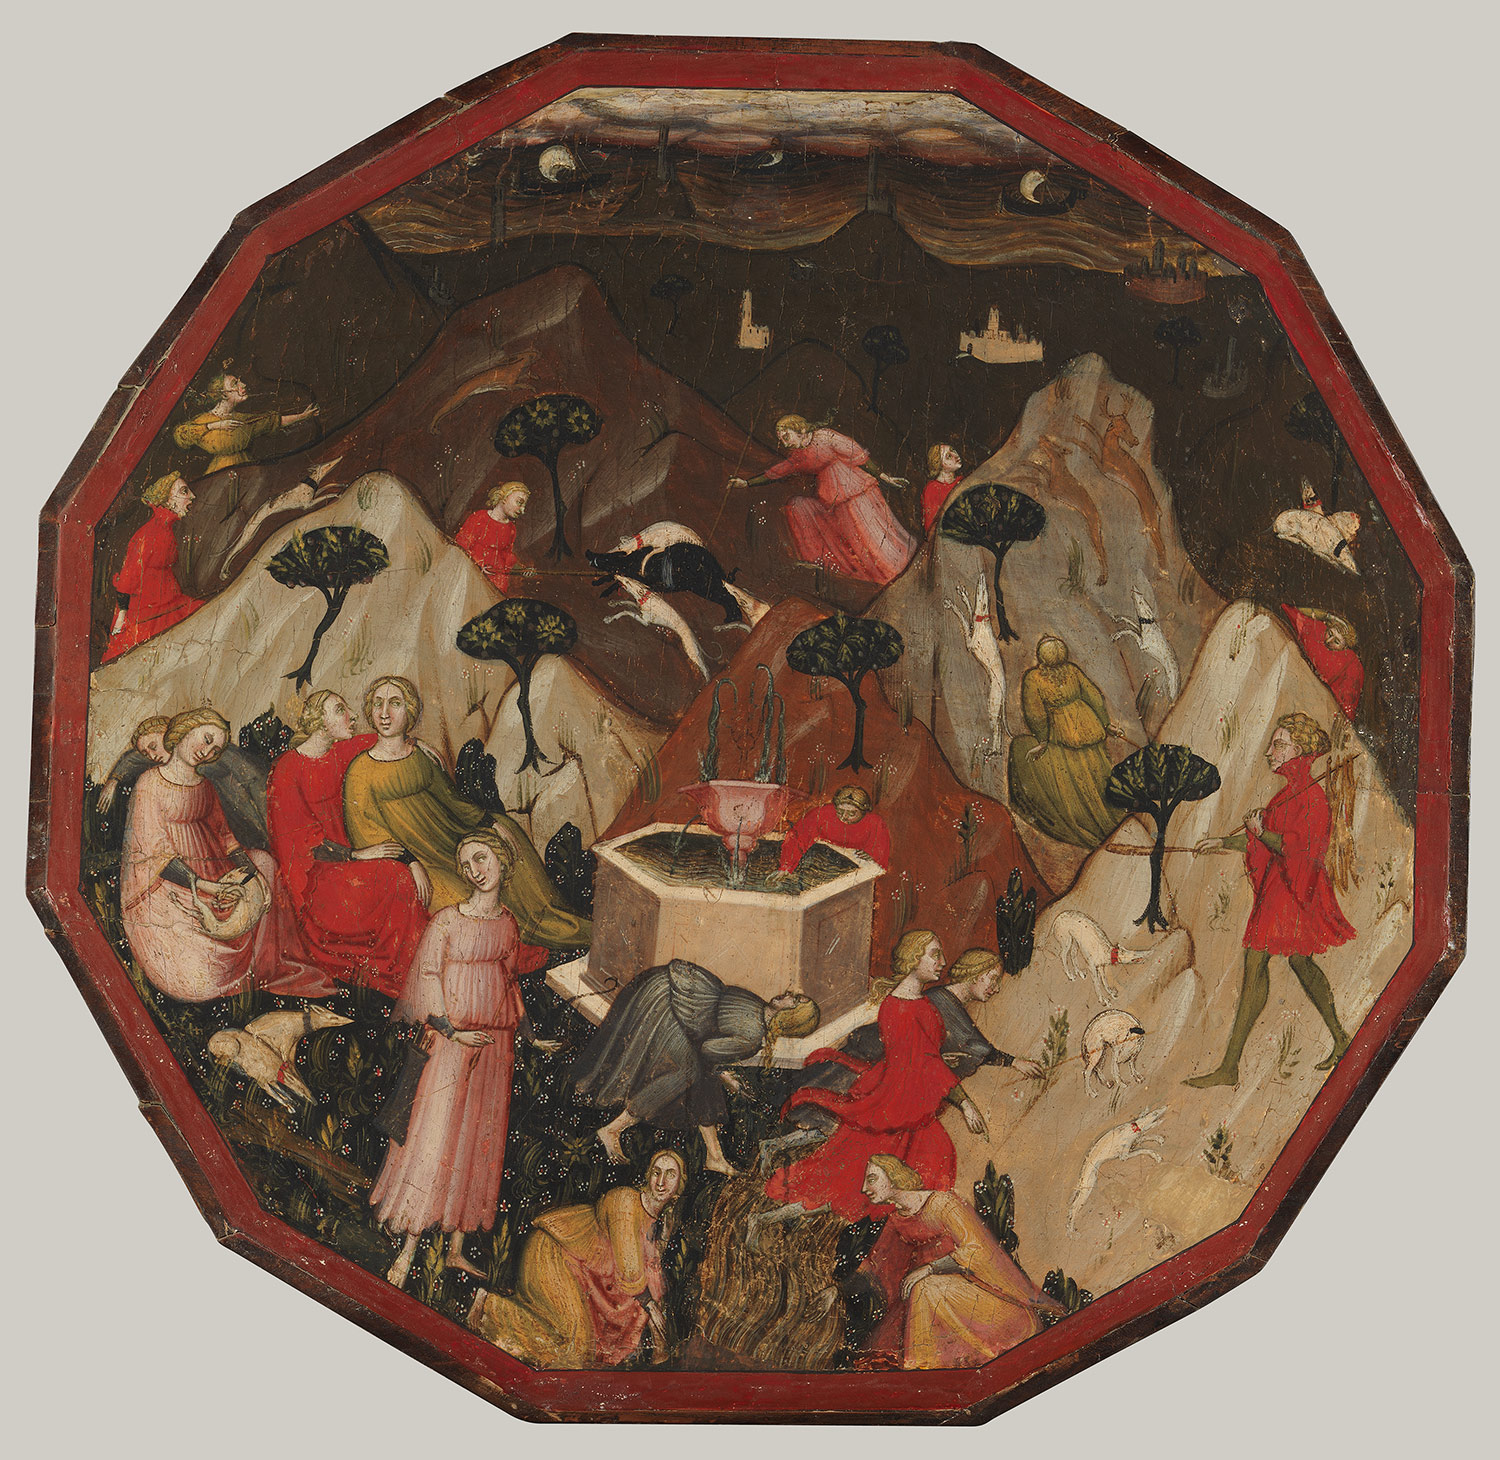 Childbirth tray desco da parto with scenes from Boccaccio's Commedia delle 